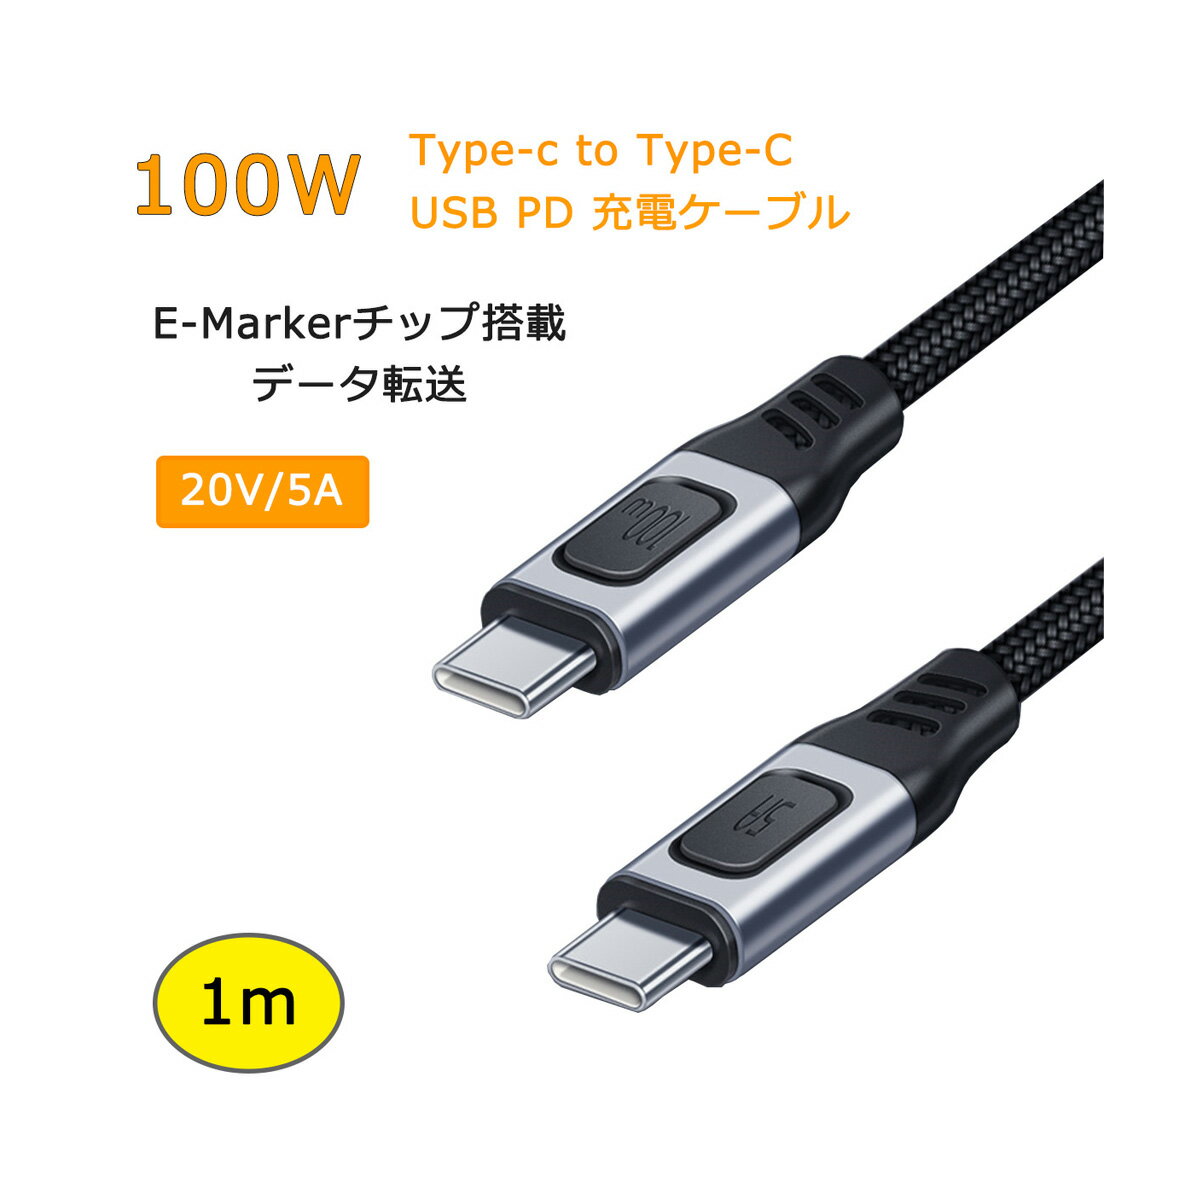  1m 100W USB Type C-Type C 充電ケーブル 20V/5A PD 急速充電 タイプC USB-C データ転送 E-Markerチップ搭載 480Mbps Galaxy/Xperia/MacbookPro/iPadPro/Nintendo Switch 高耐久 ナイロン編 ケーブル